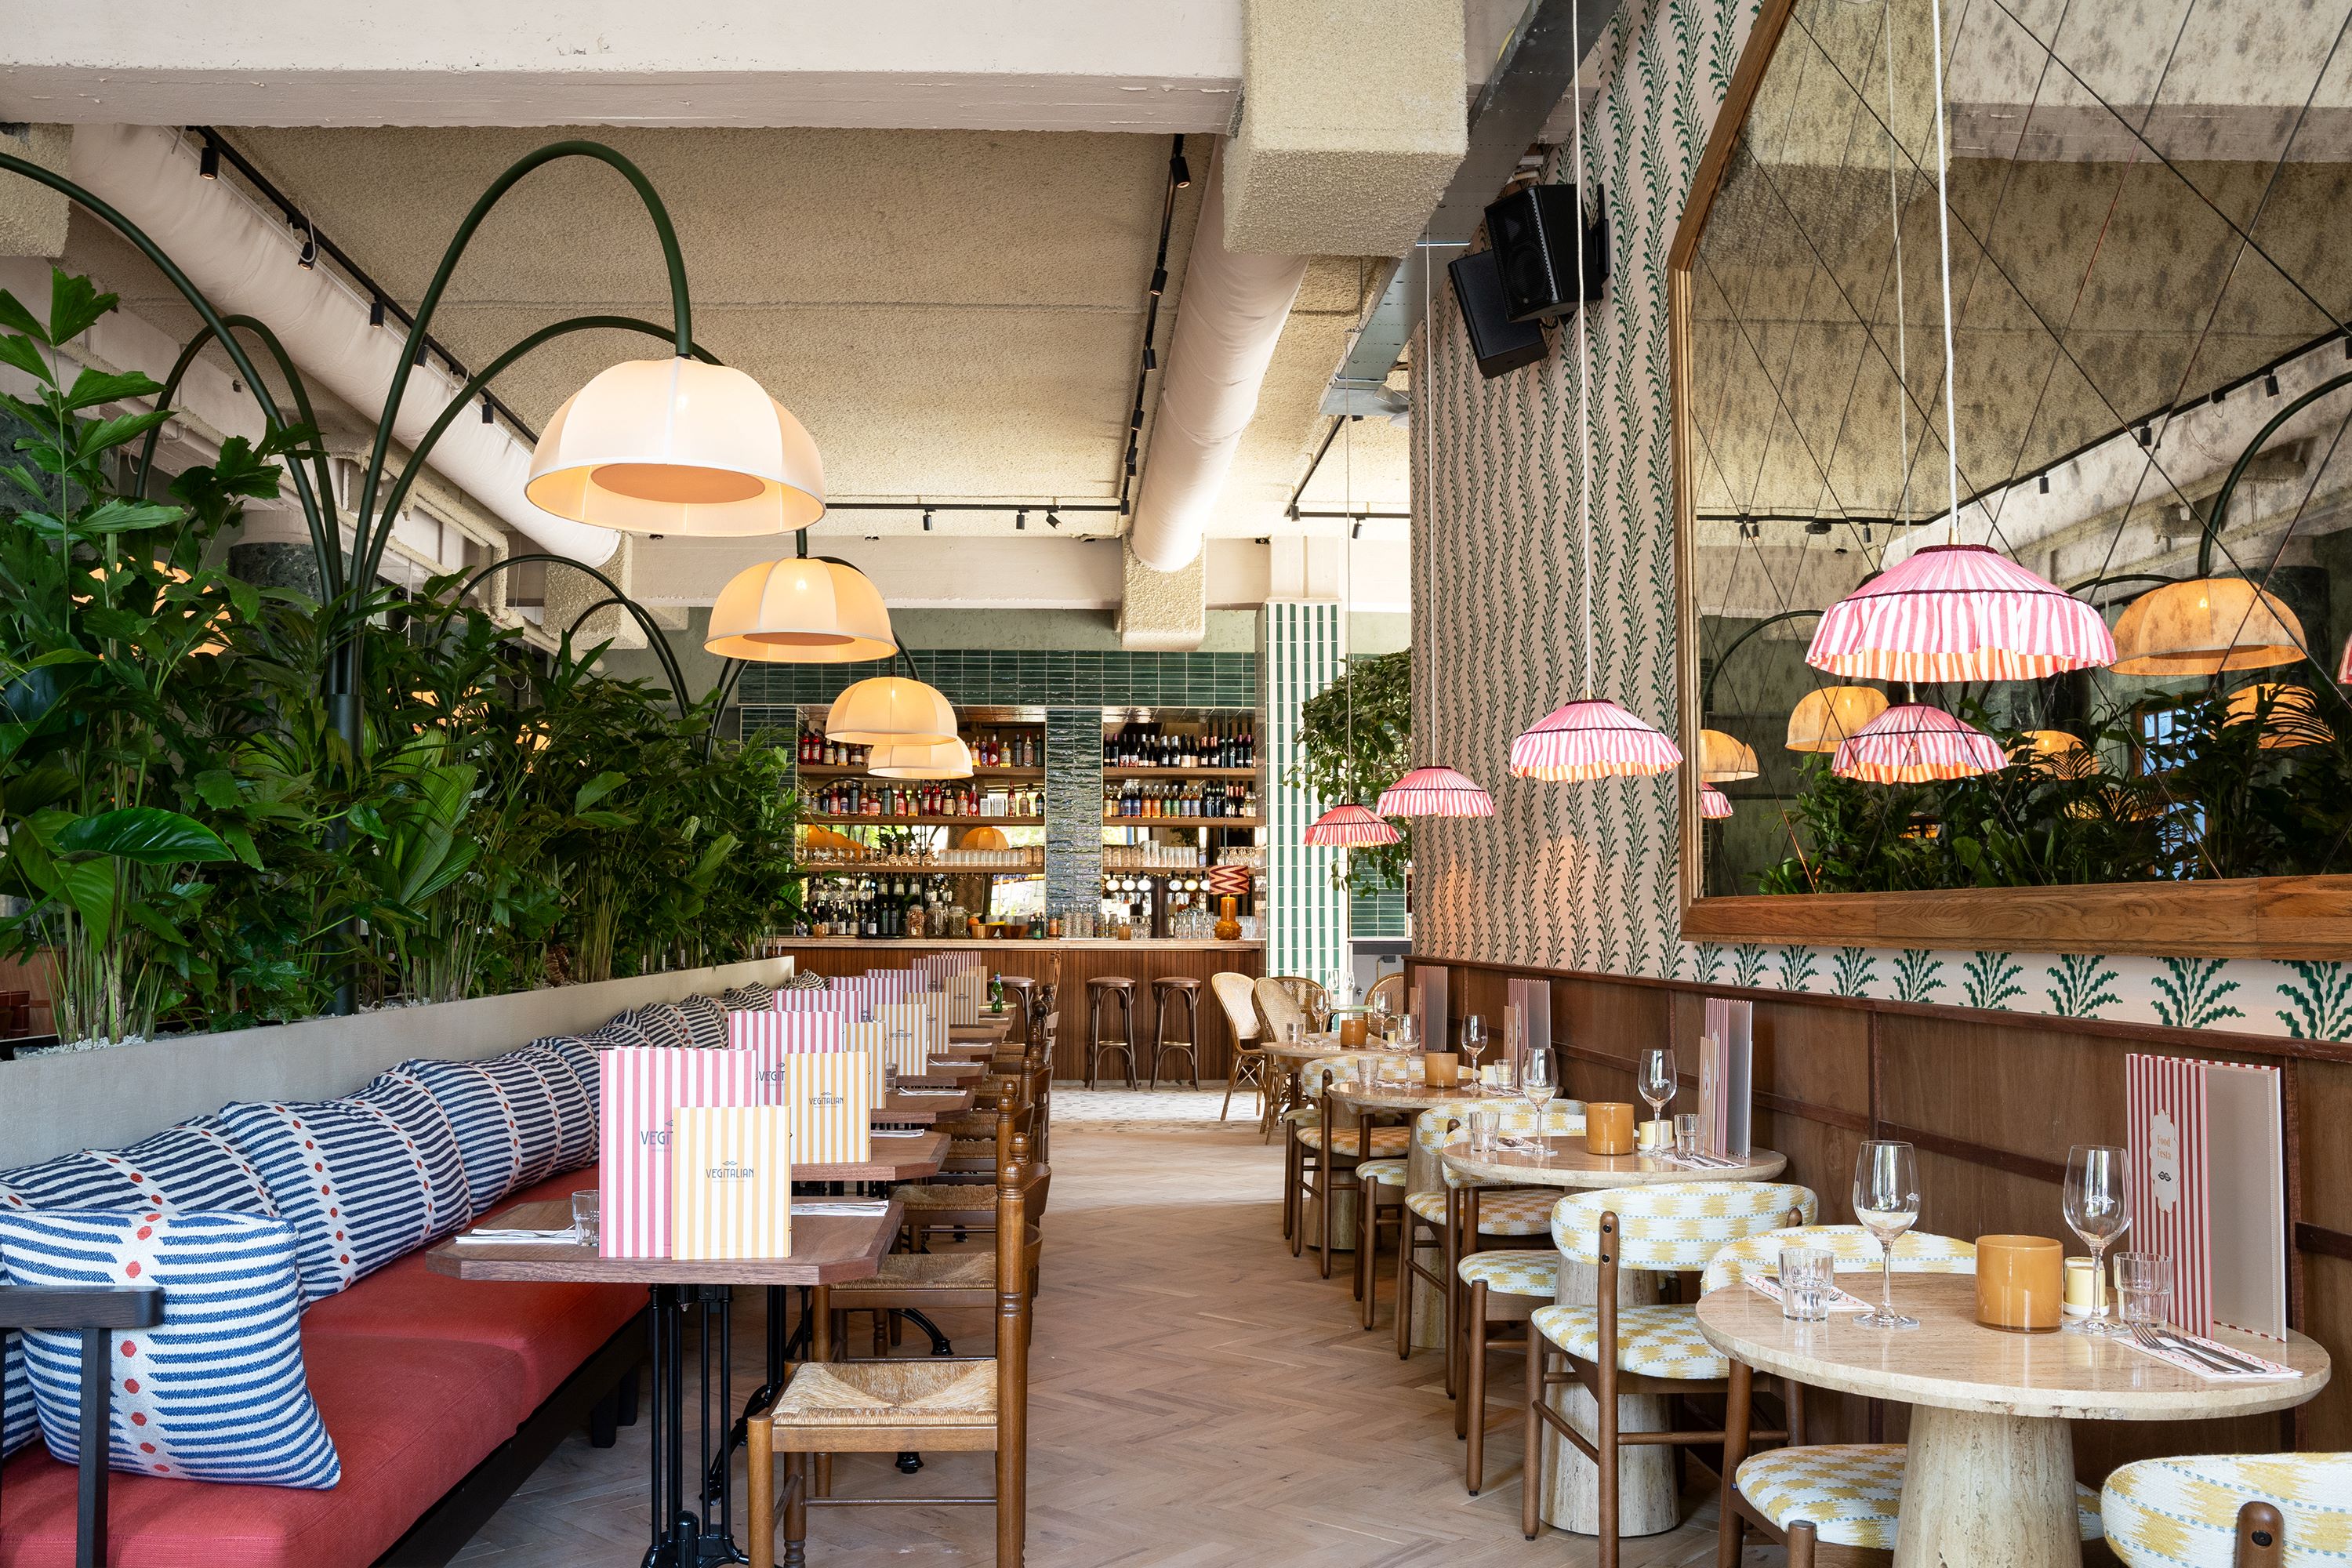 Nieuw restaurant 'Vegitalian' in Rotterdam geïnspireerd op vegetarische mediterrane keuken